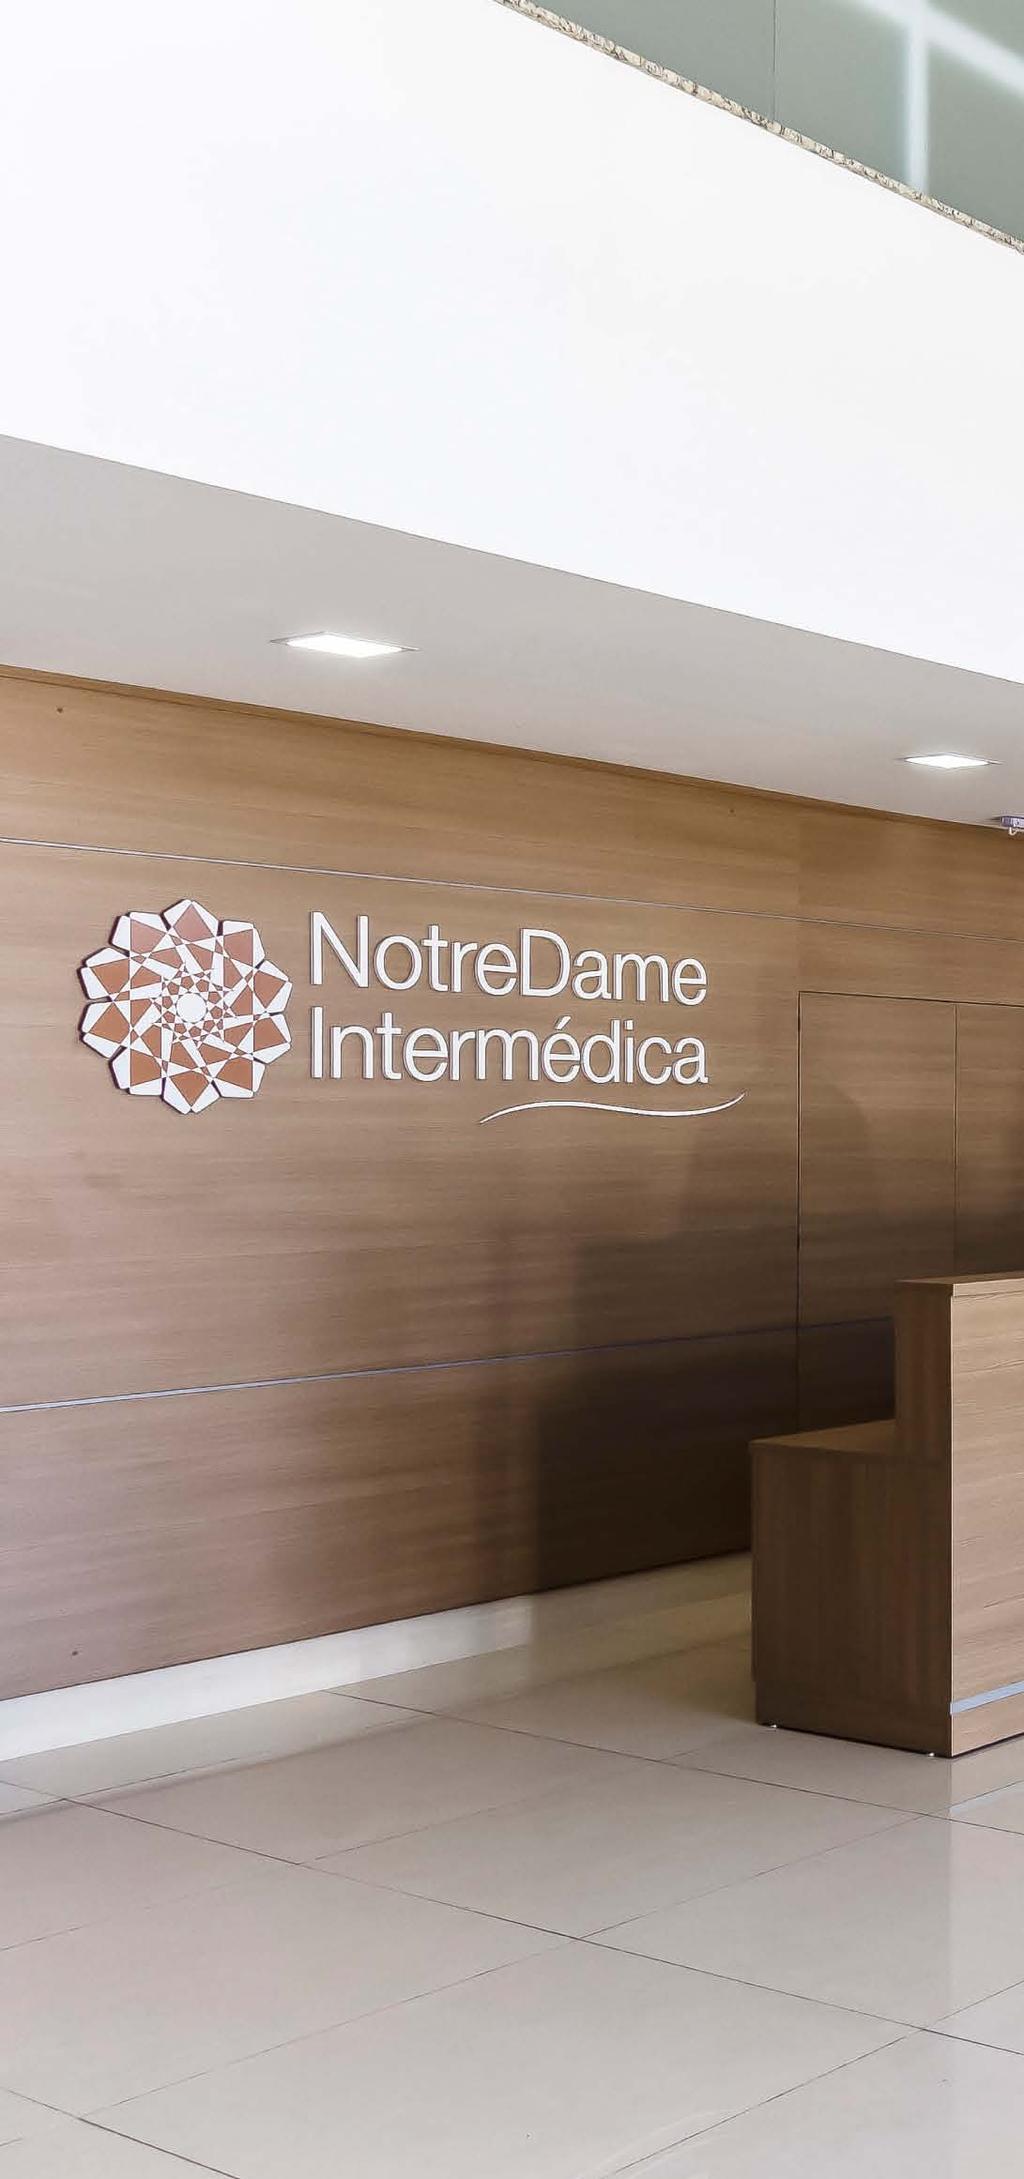 rede própria A NotreDame Intermédica possui unidades autônomas que respeitam as características regionais e garantem um serviço personalizado, humanizado e de qualidade aos seus beneficiários.